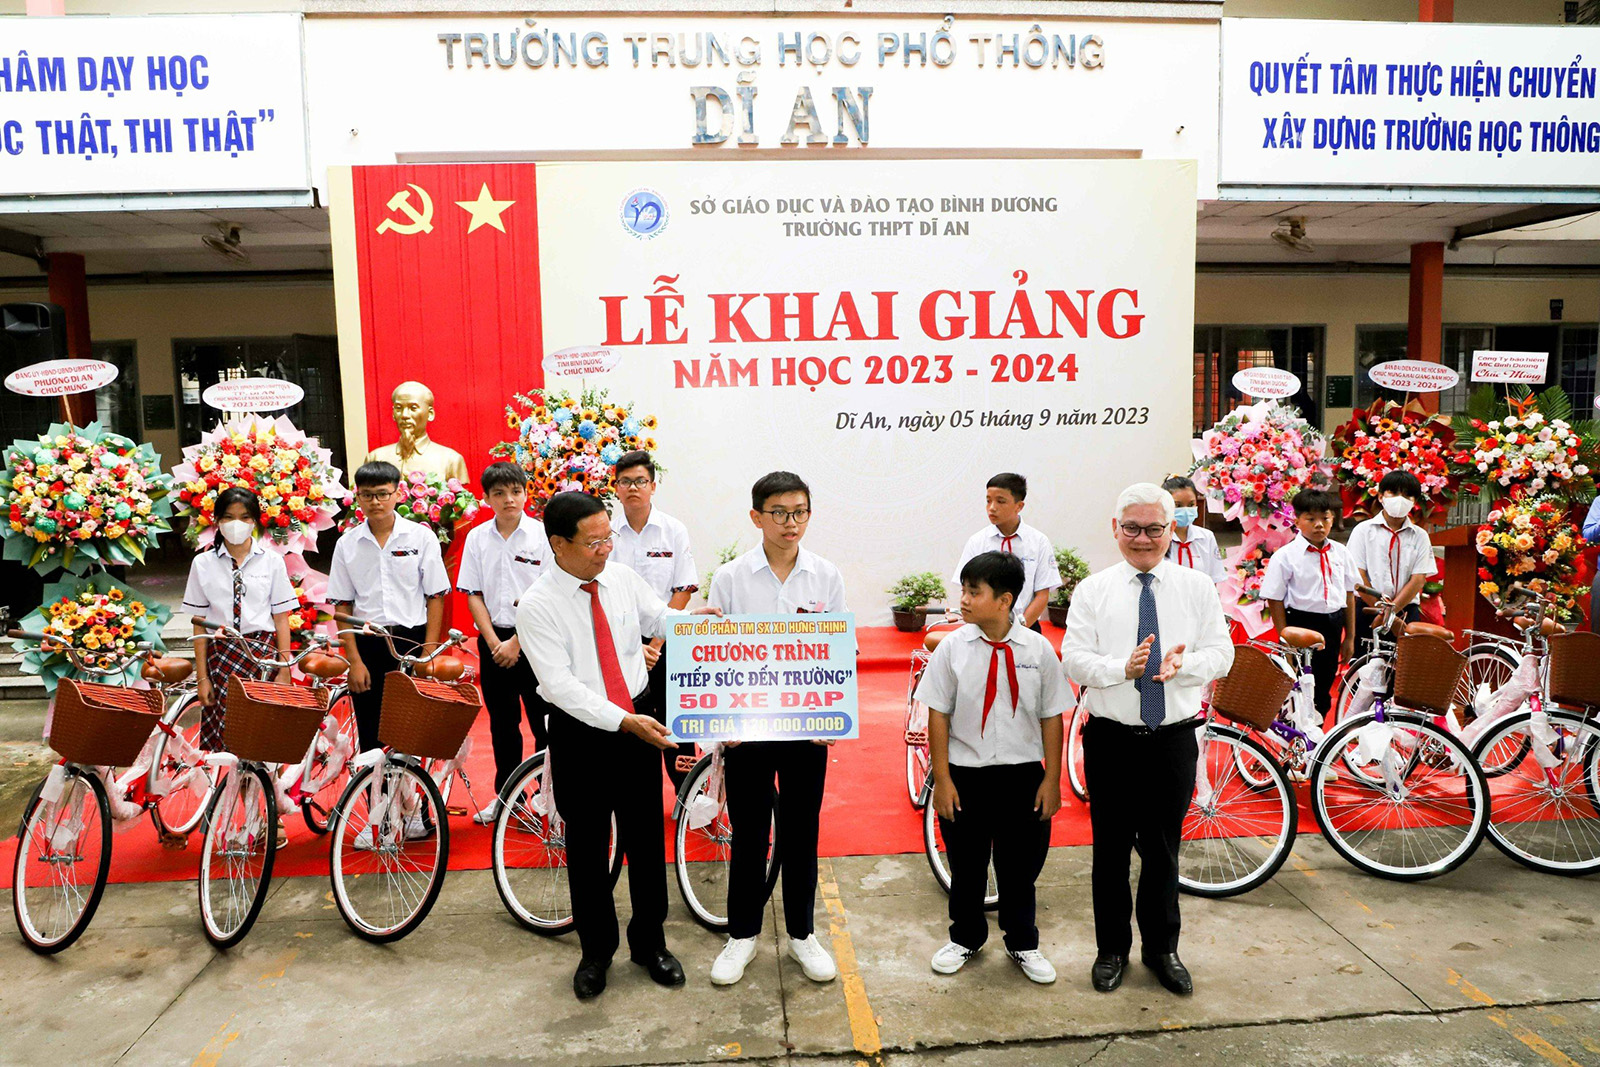 Công ty CPTMSXKD Hưng Thịnh trao tặng 50 xe đạp trong Chương trình Tiếp sức đến trường cho học Trường THPT Dĩ An - Bình Dương.